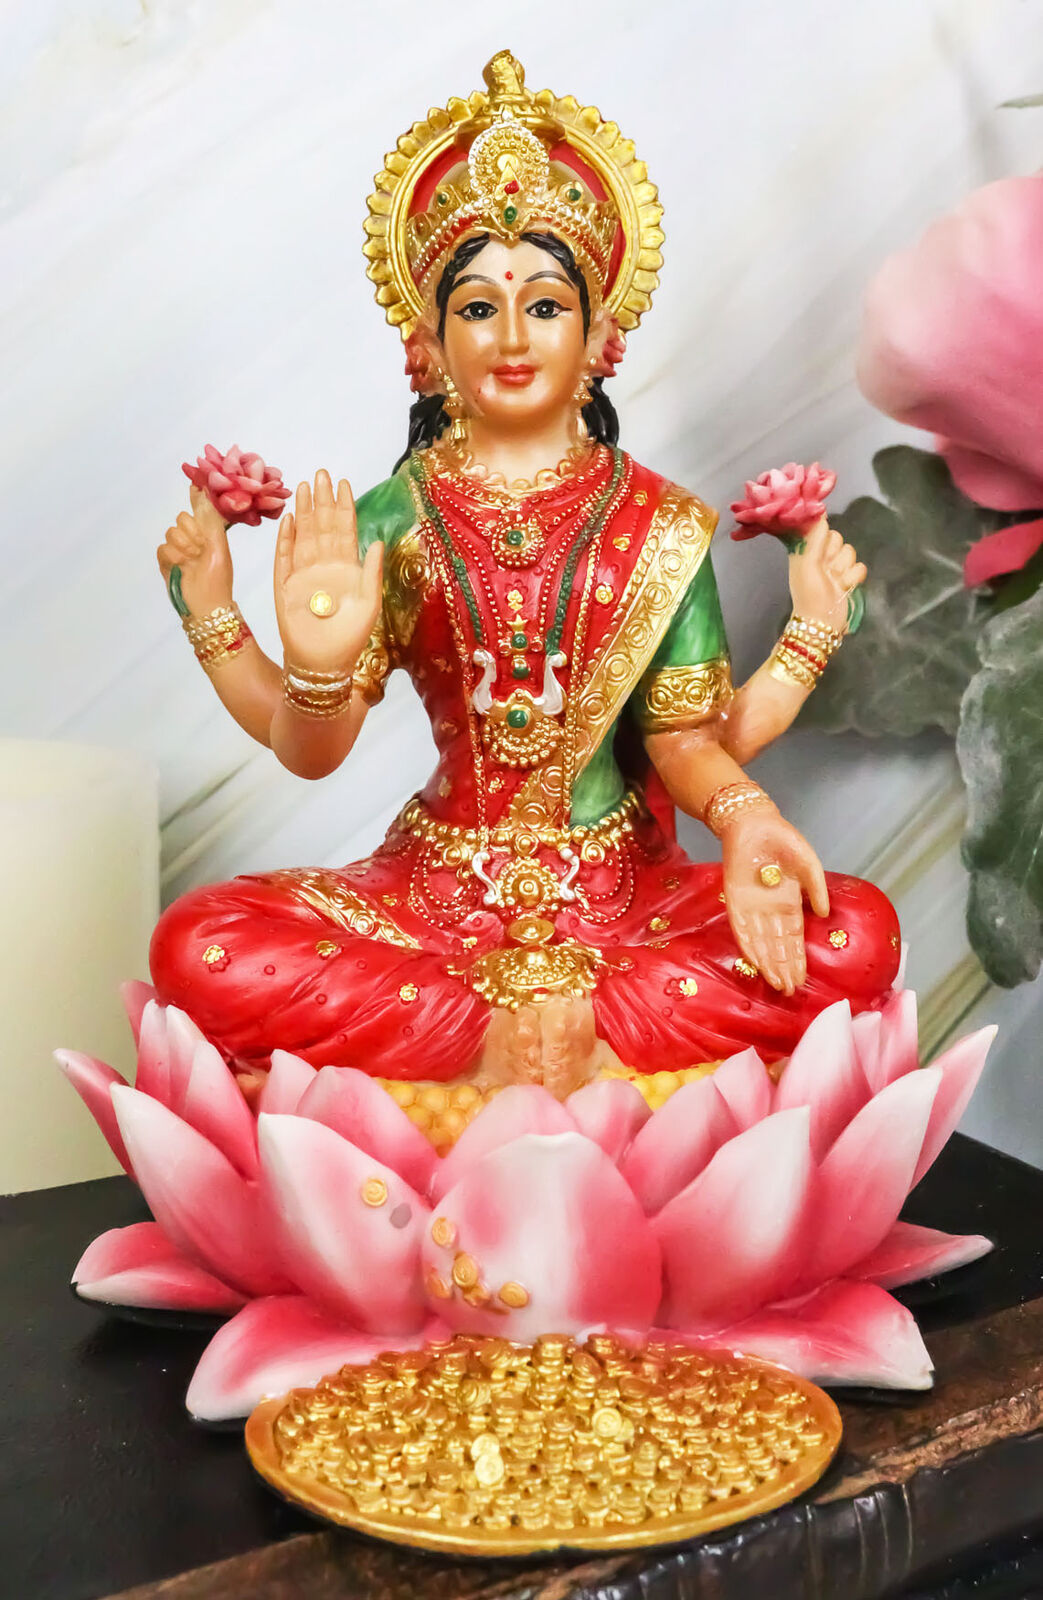 Hindu Goddess Of Prosperity Lakshmi Seated On Lotus Flower Statue Figurine Decor